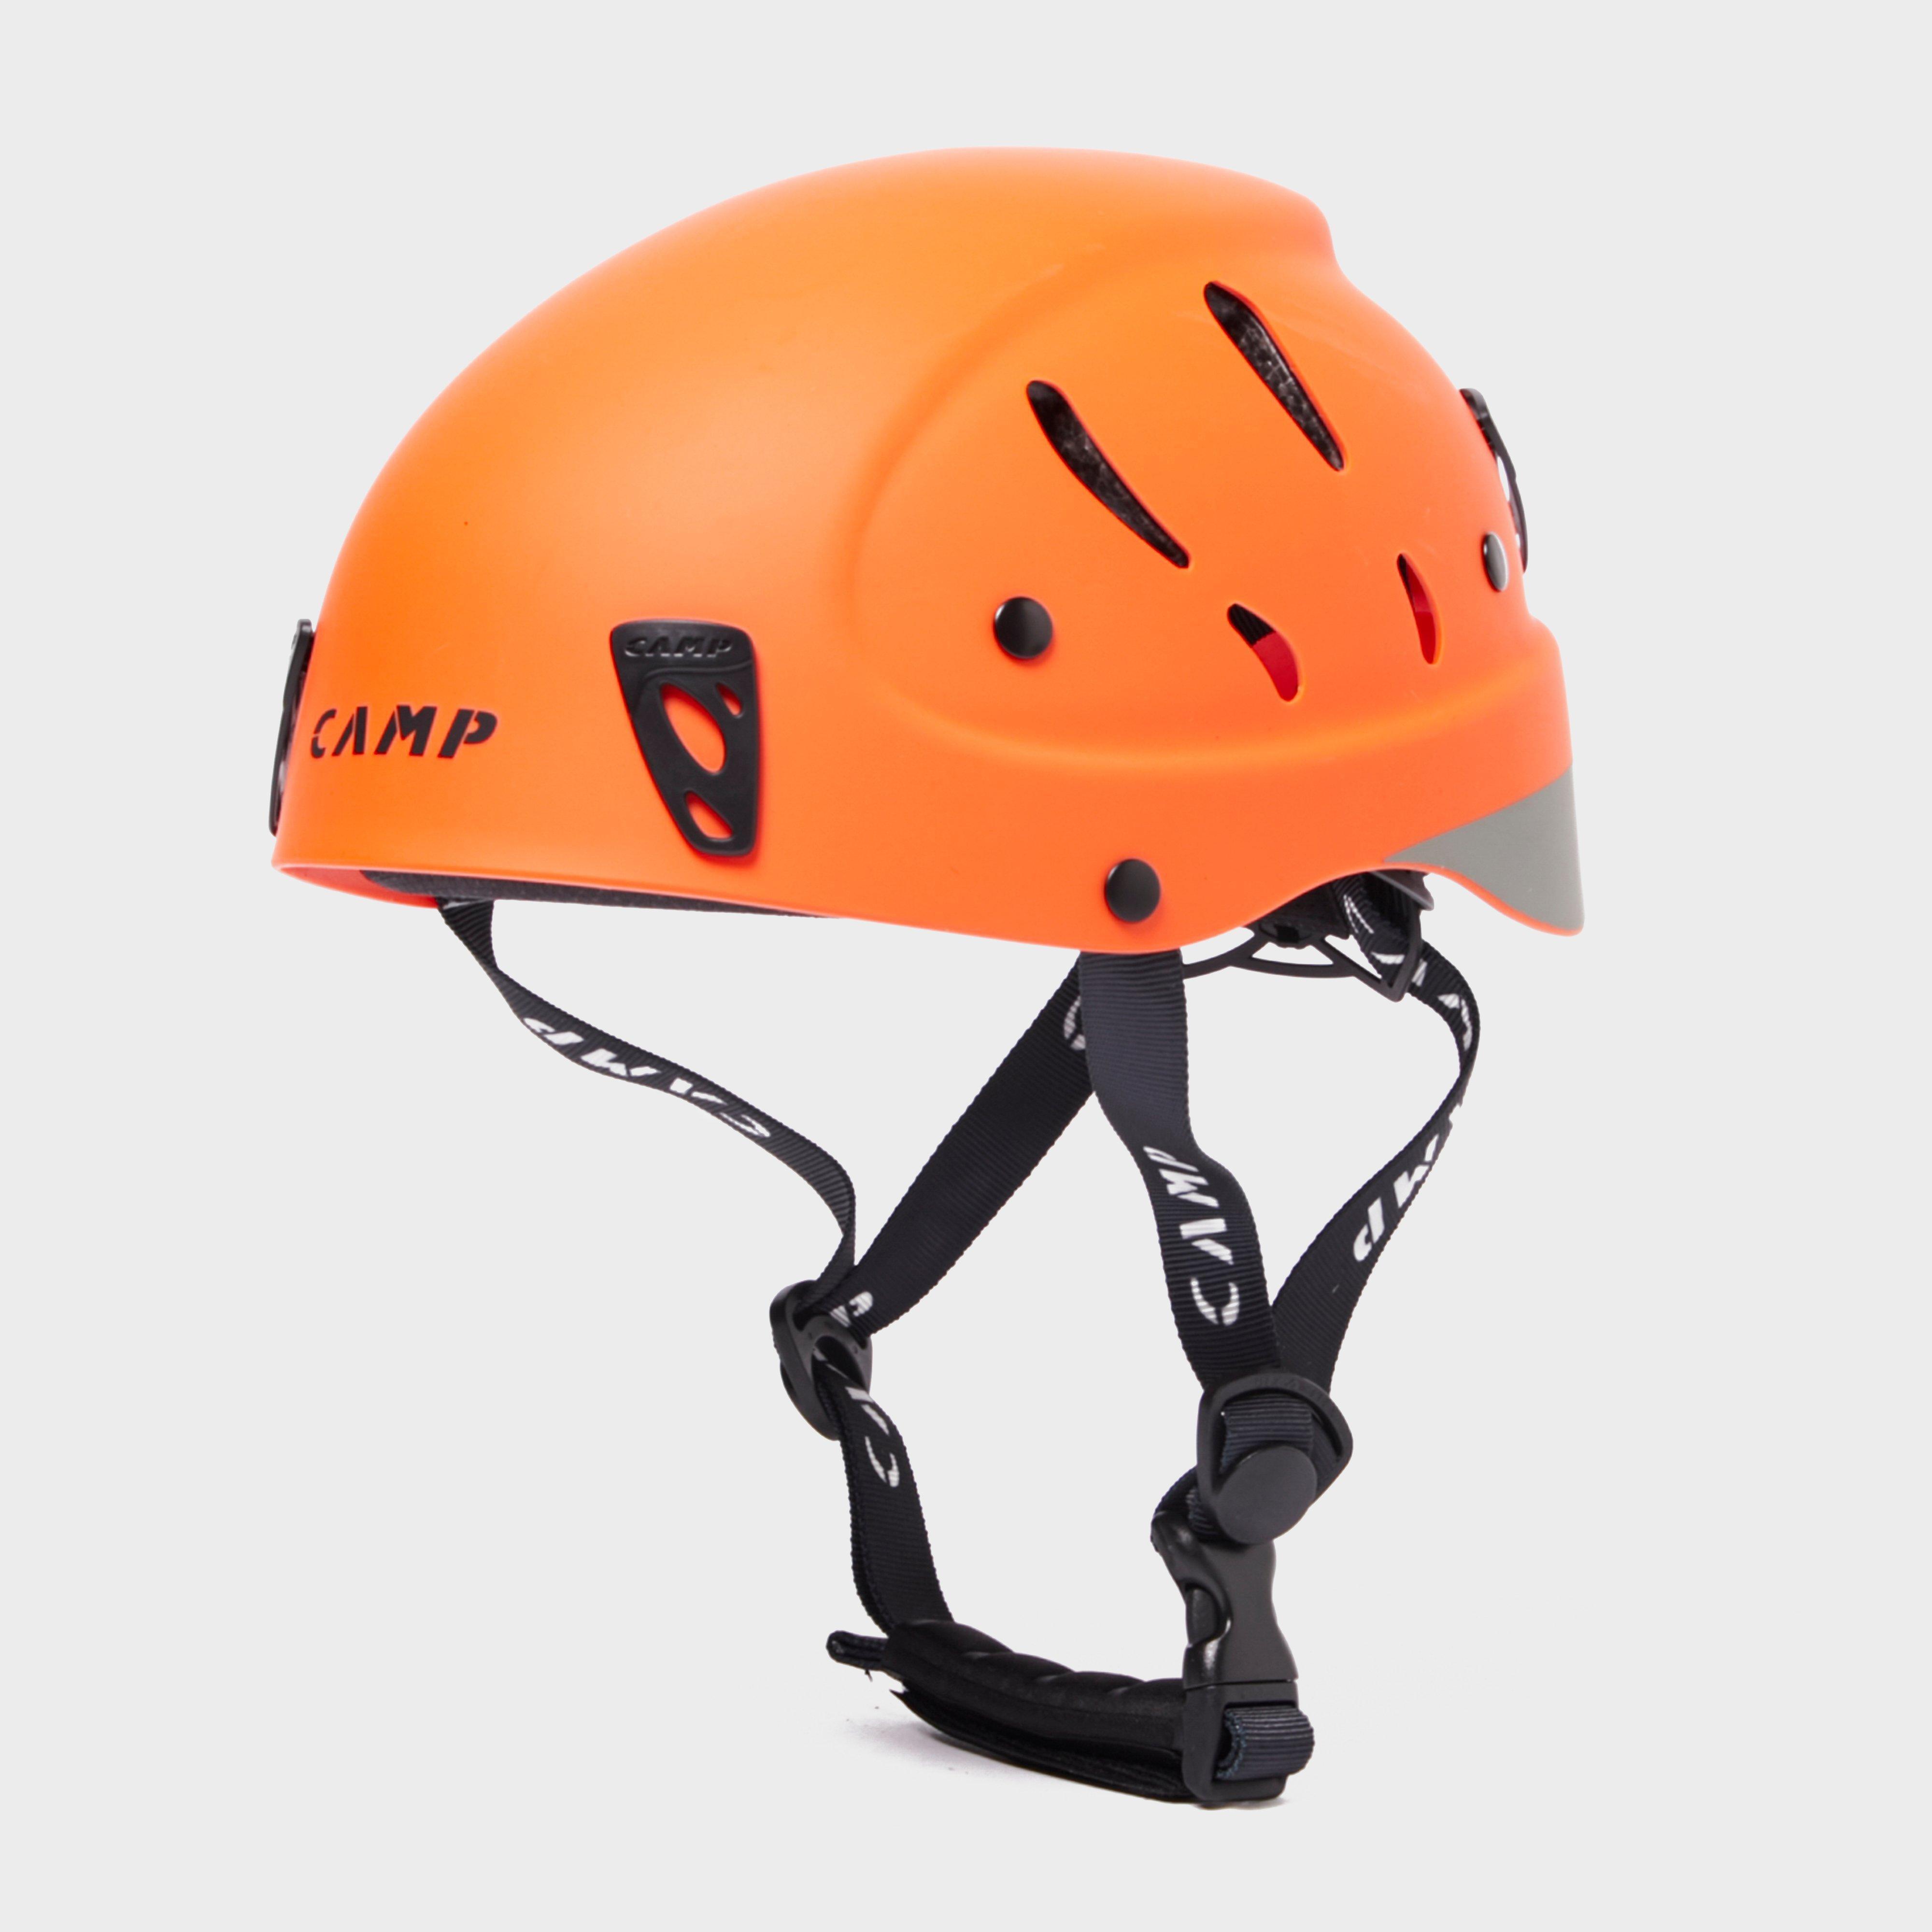 camp Camp Armour Pro Helmet - Orange, Orange